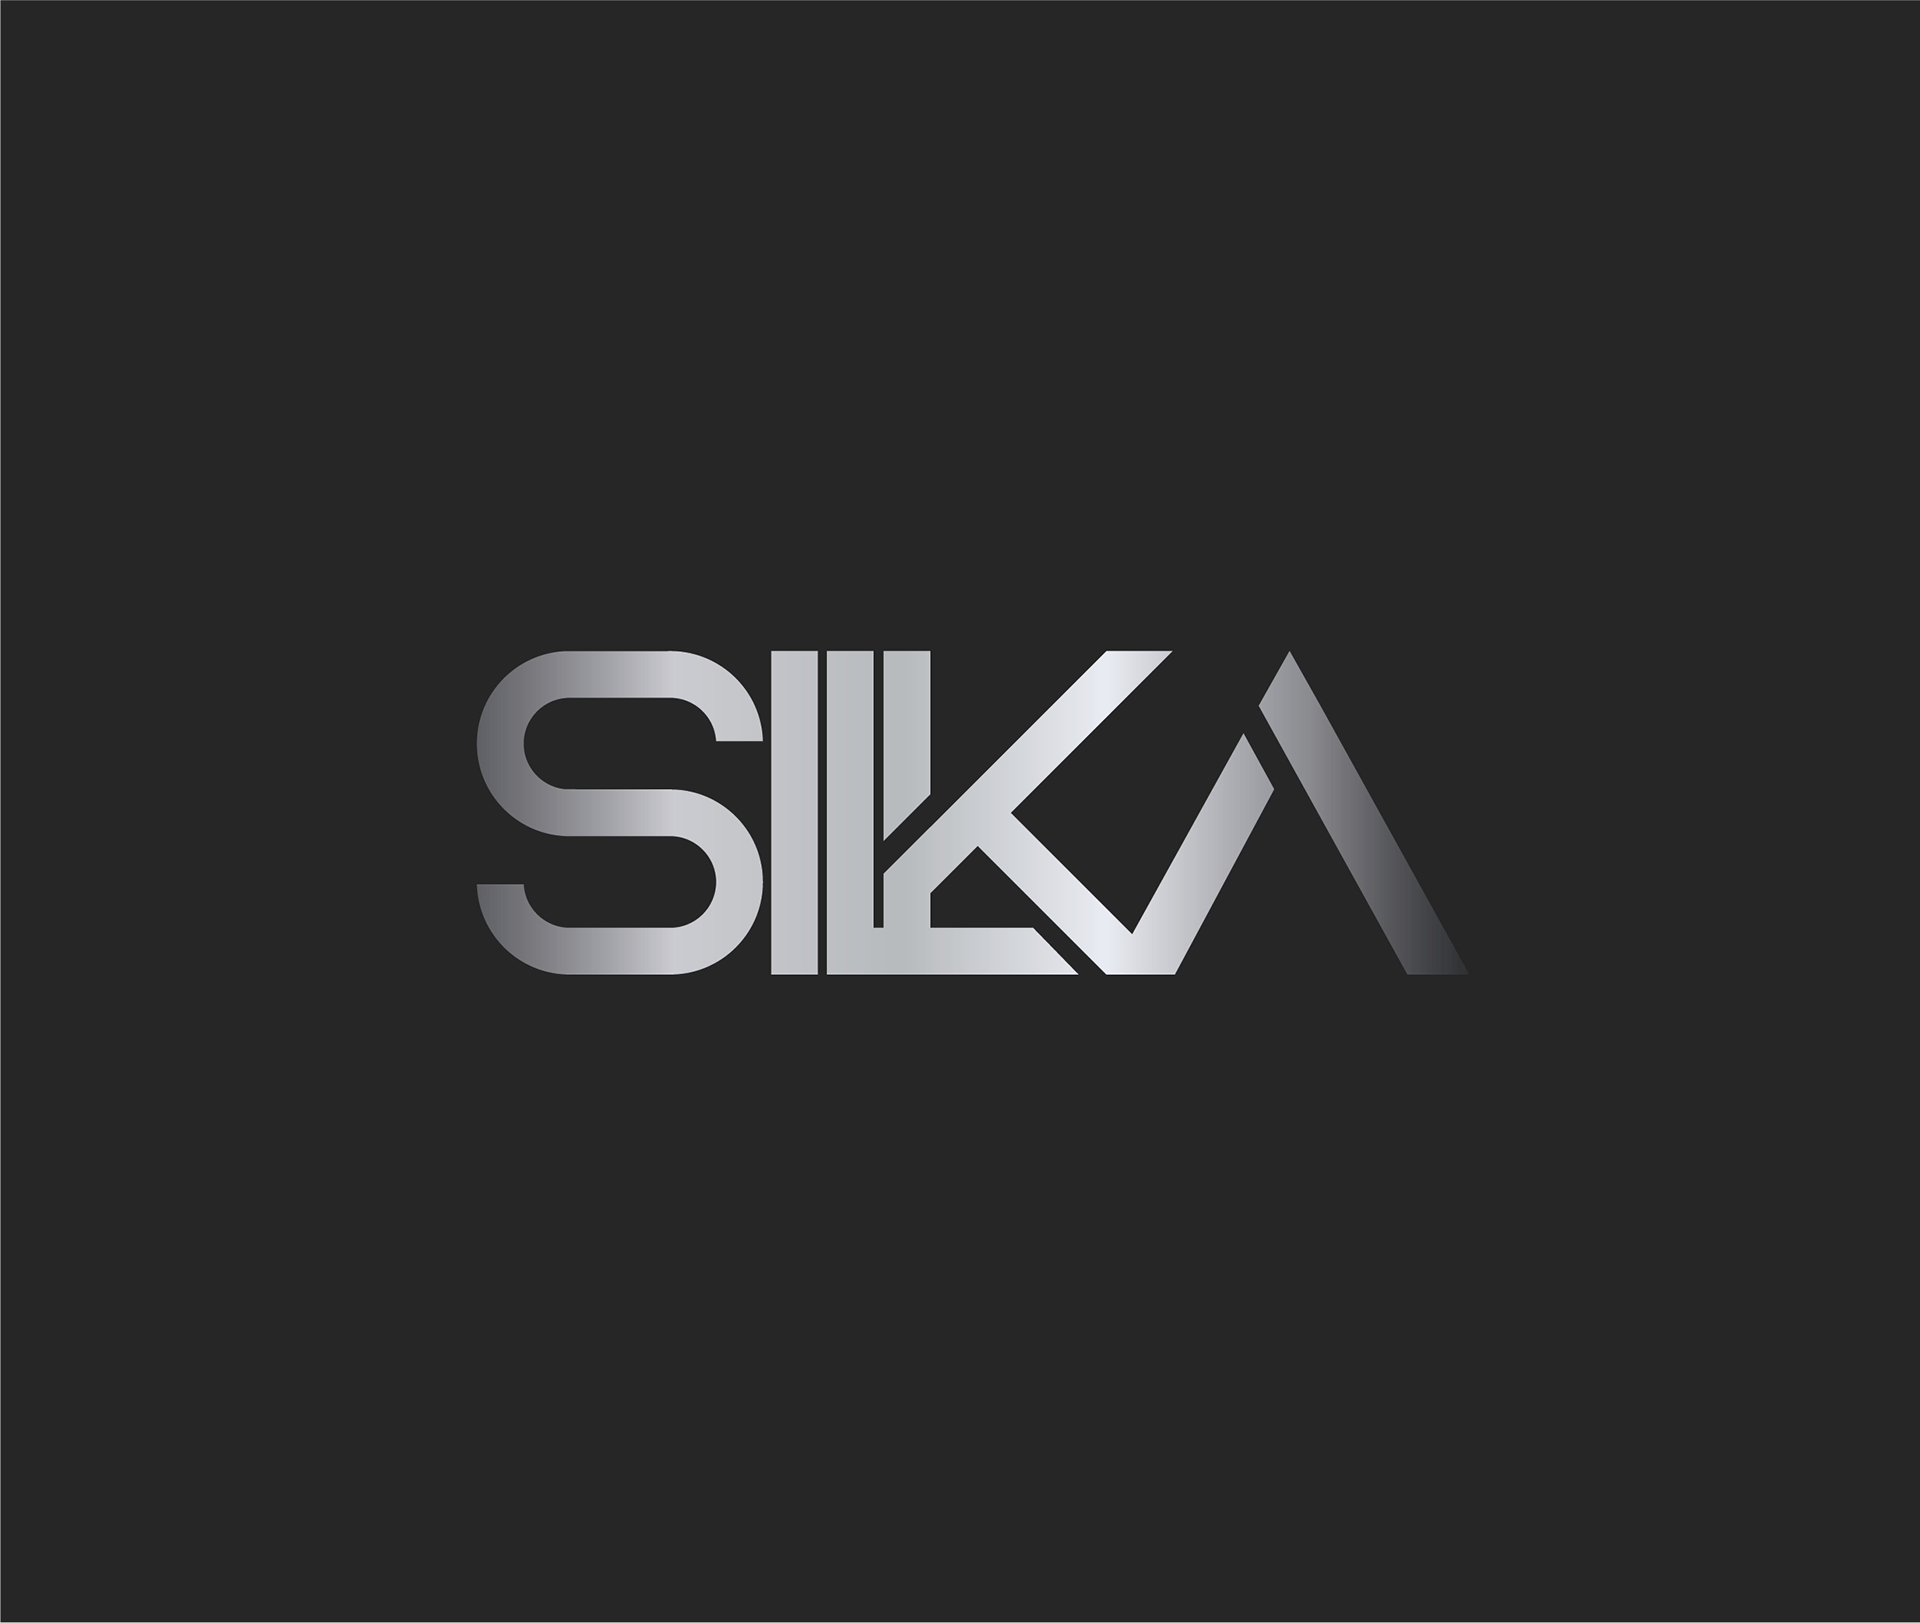 SILKA Re-branding